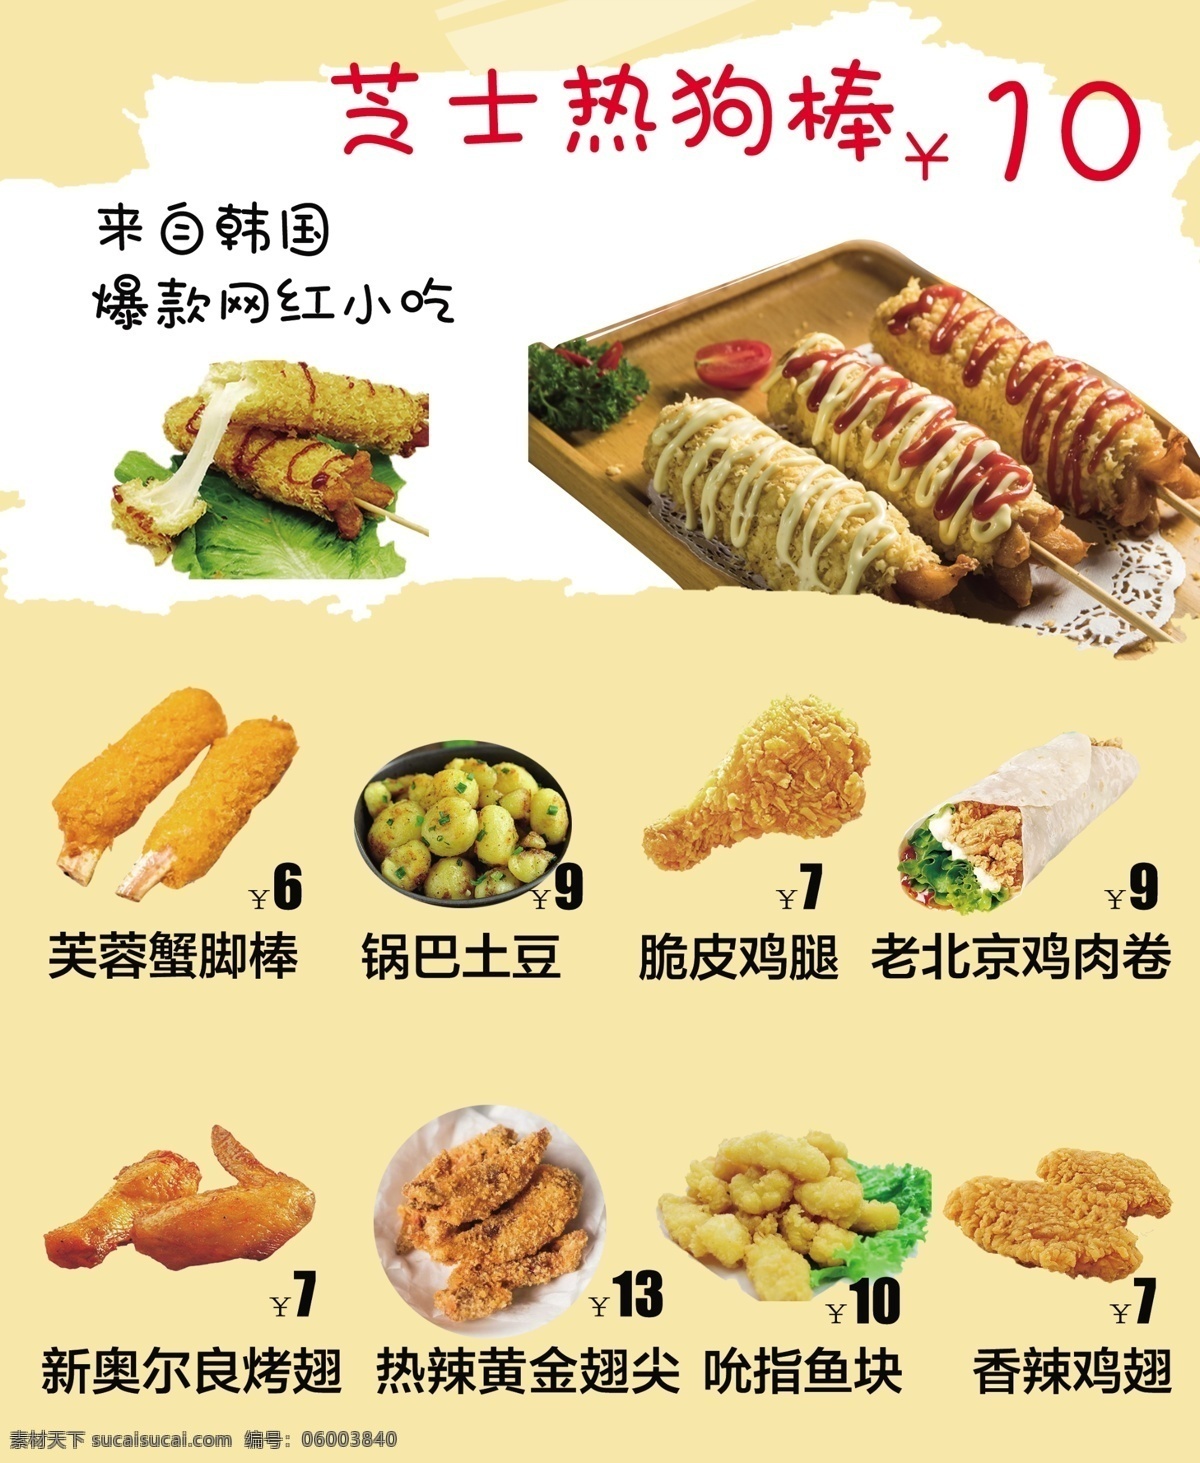 热狗棒 菜单 海报 全家福 广告 奶菜 饮品